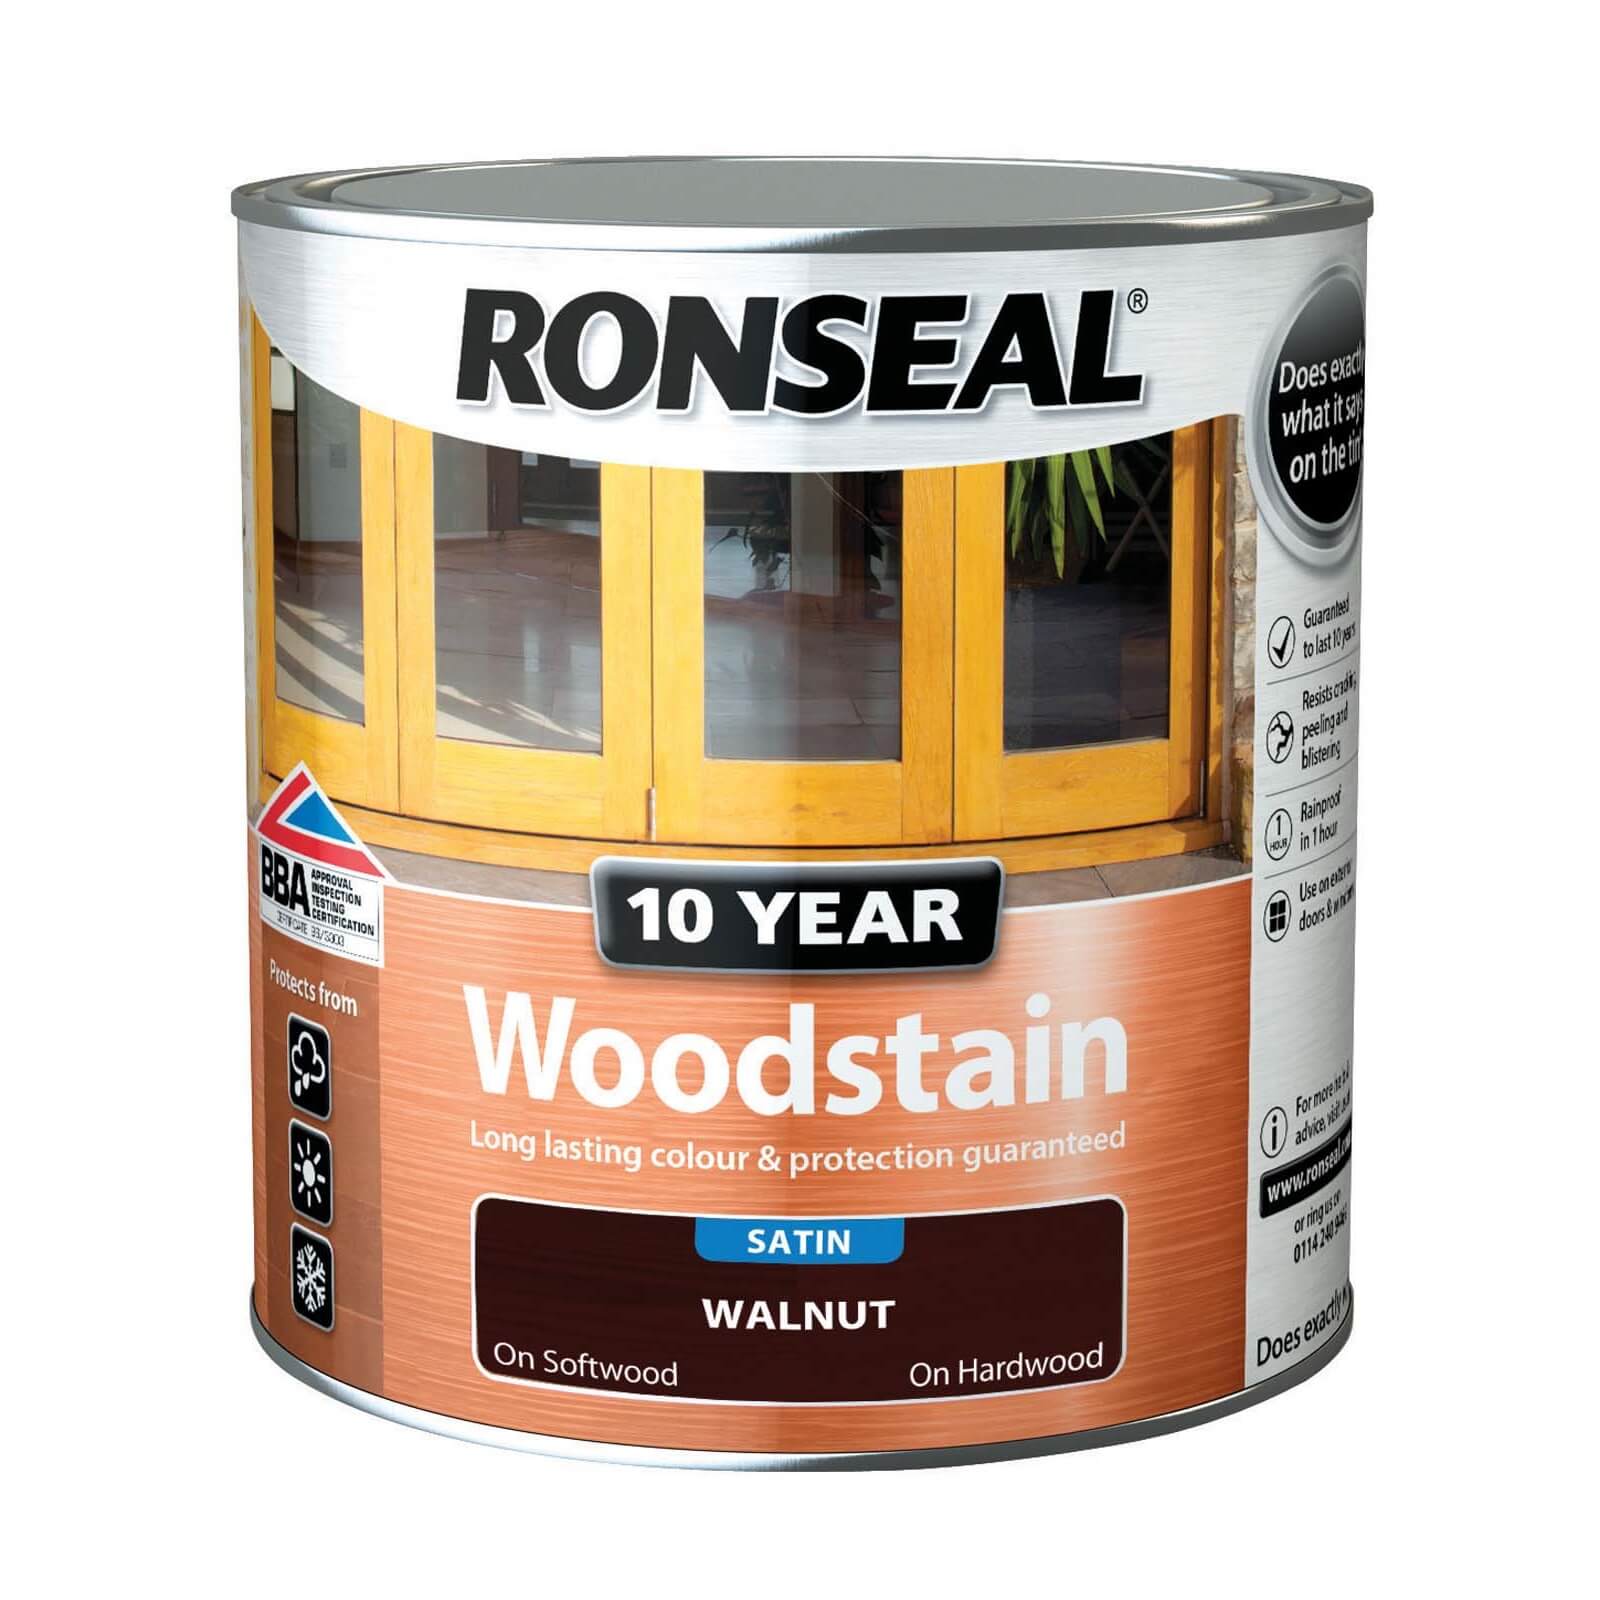 Ronseal 10 Year Woodstain Walnut Satin -  750ml